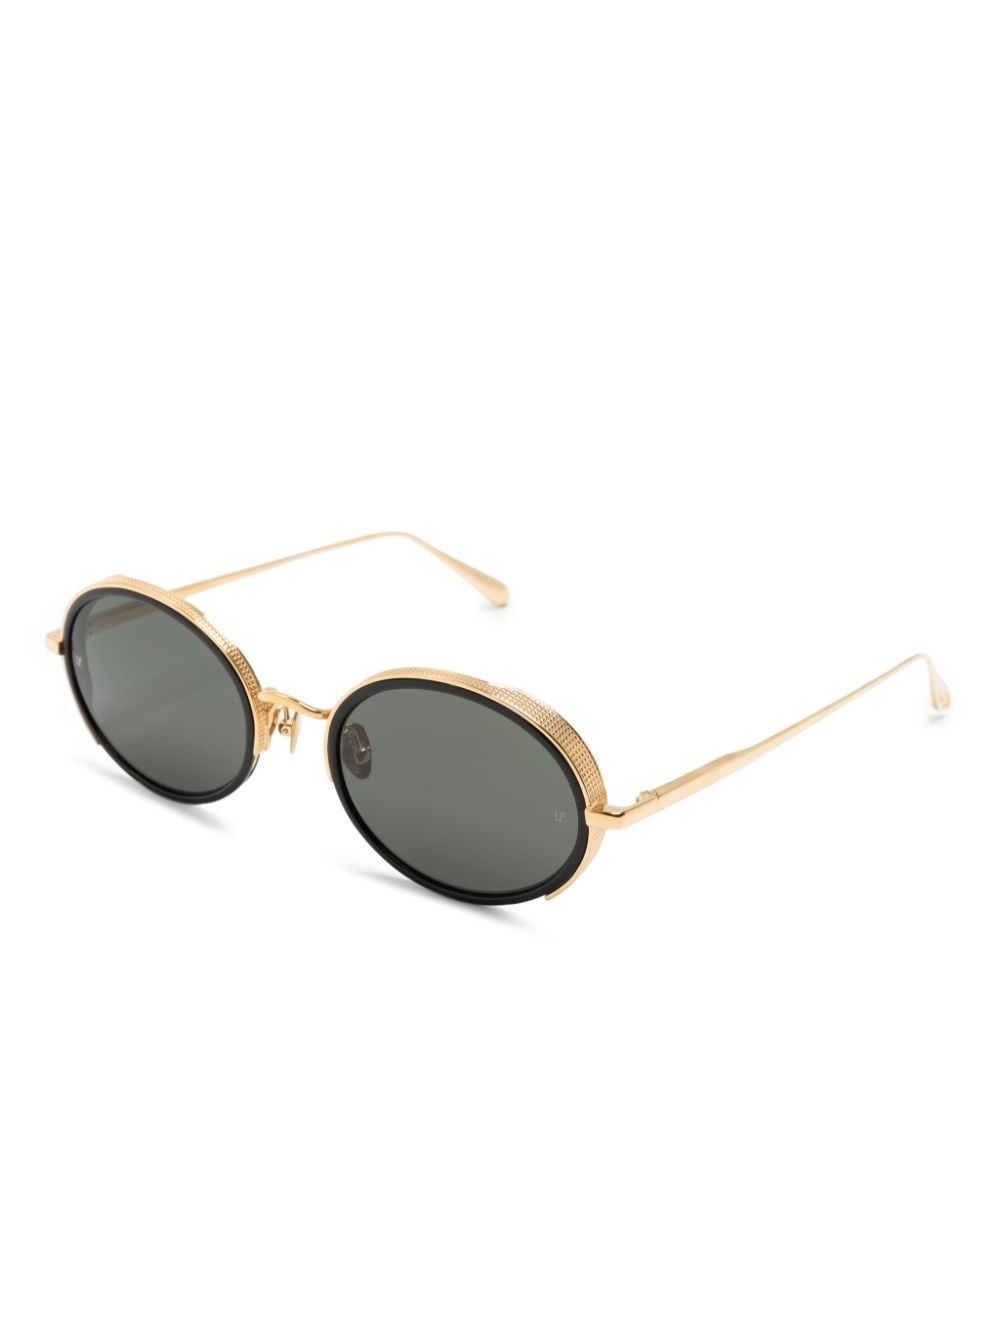 Finn round-frame sunglasses - 2